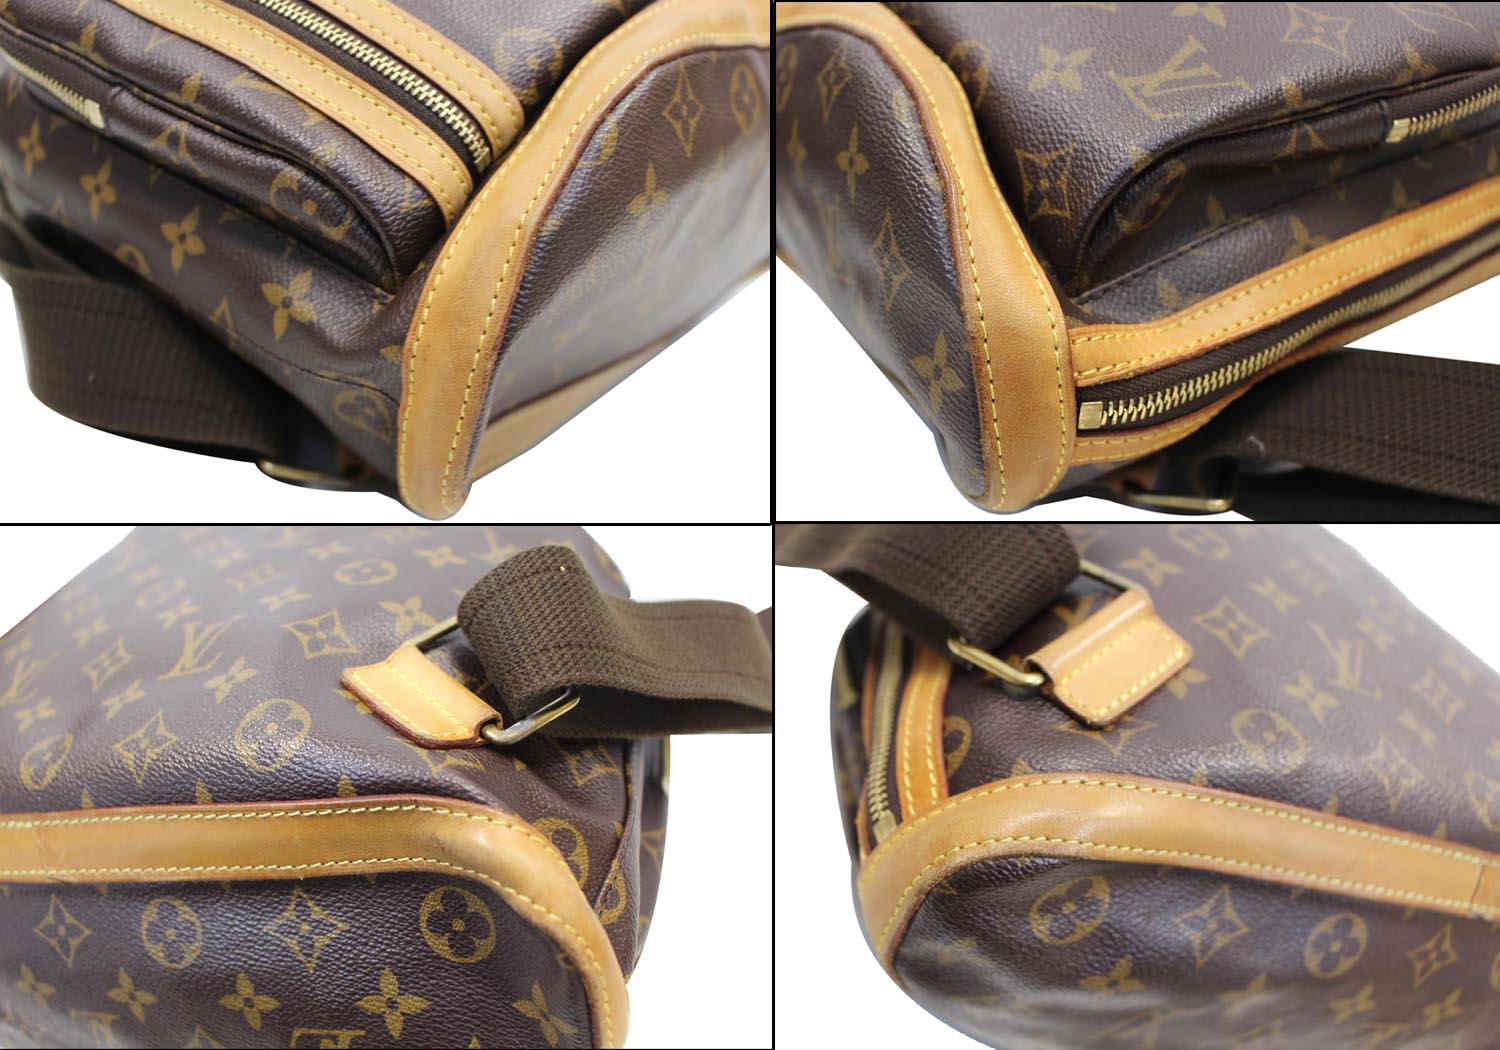 Louis Vuitton Vintage - Monogram Bosphore Backpack - Brown